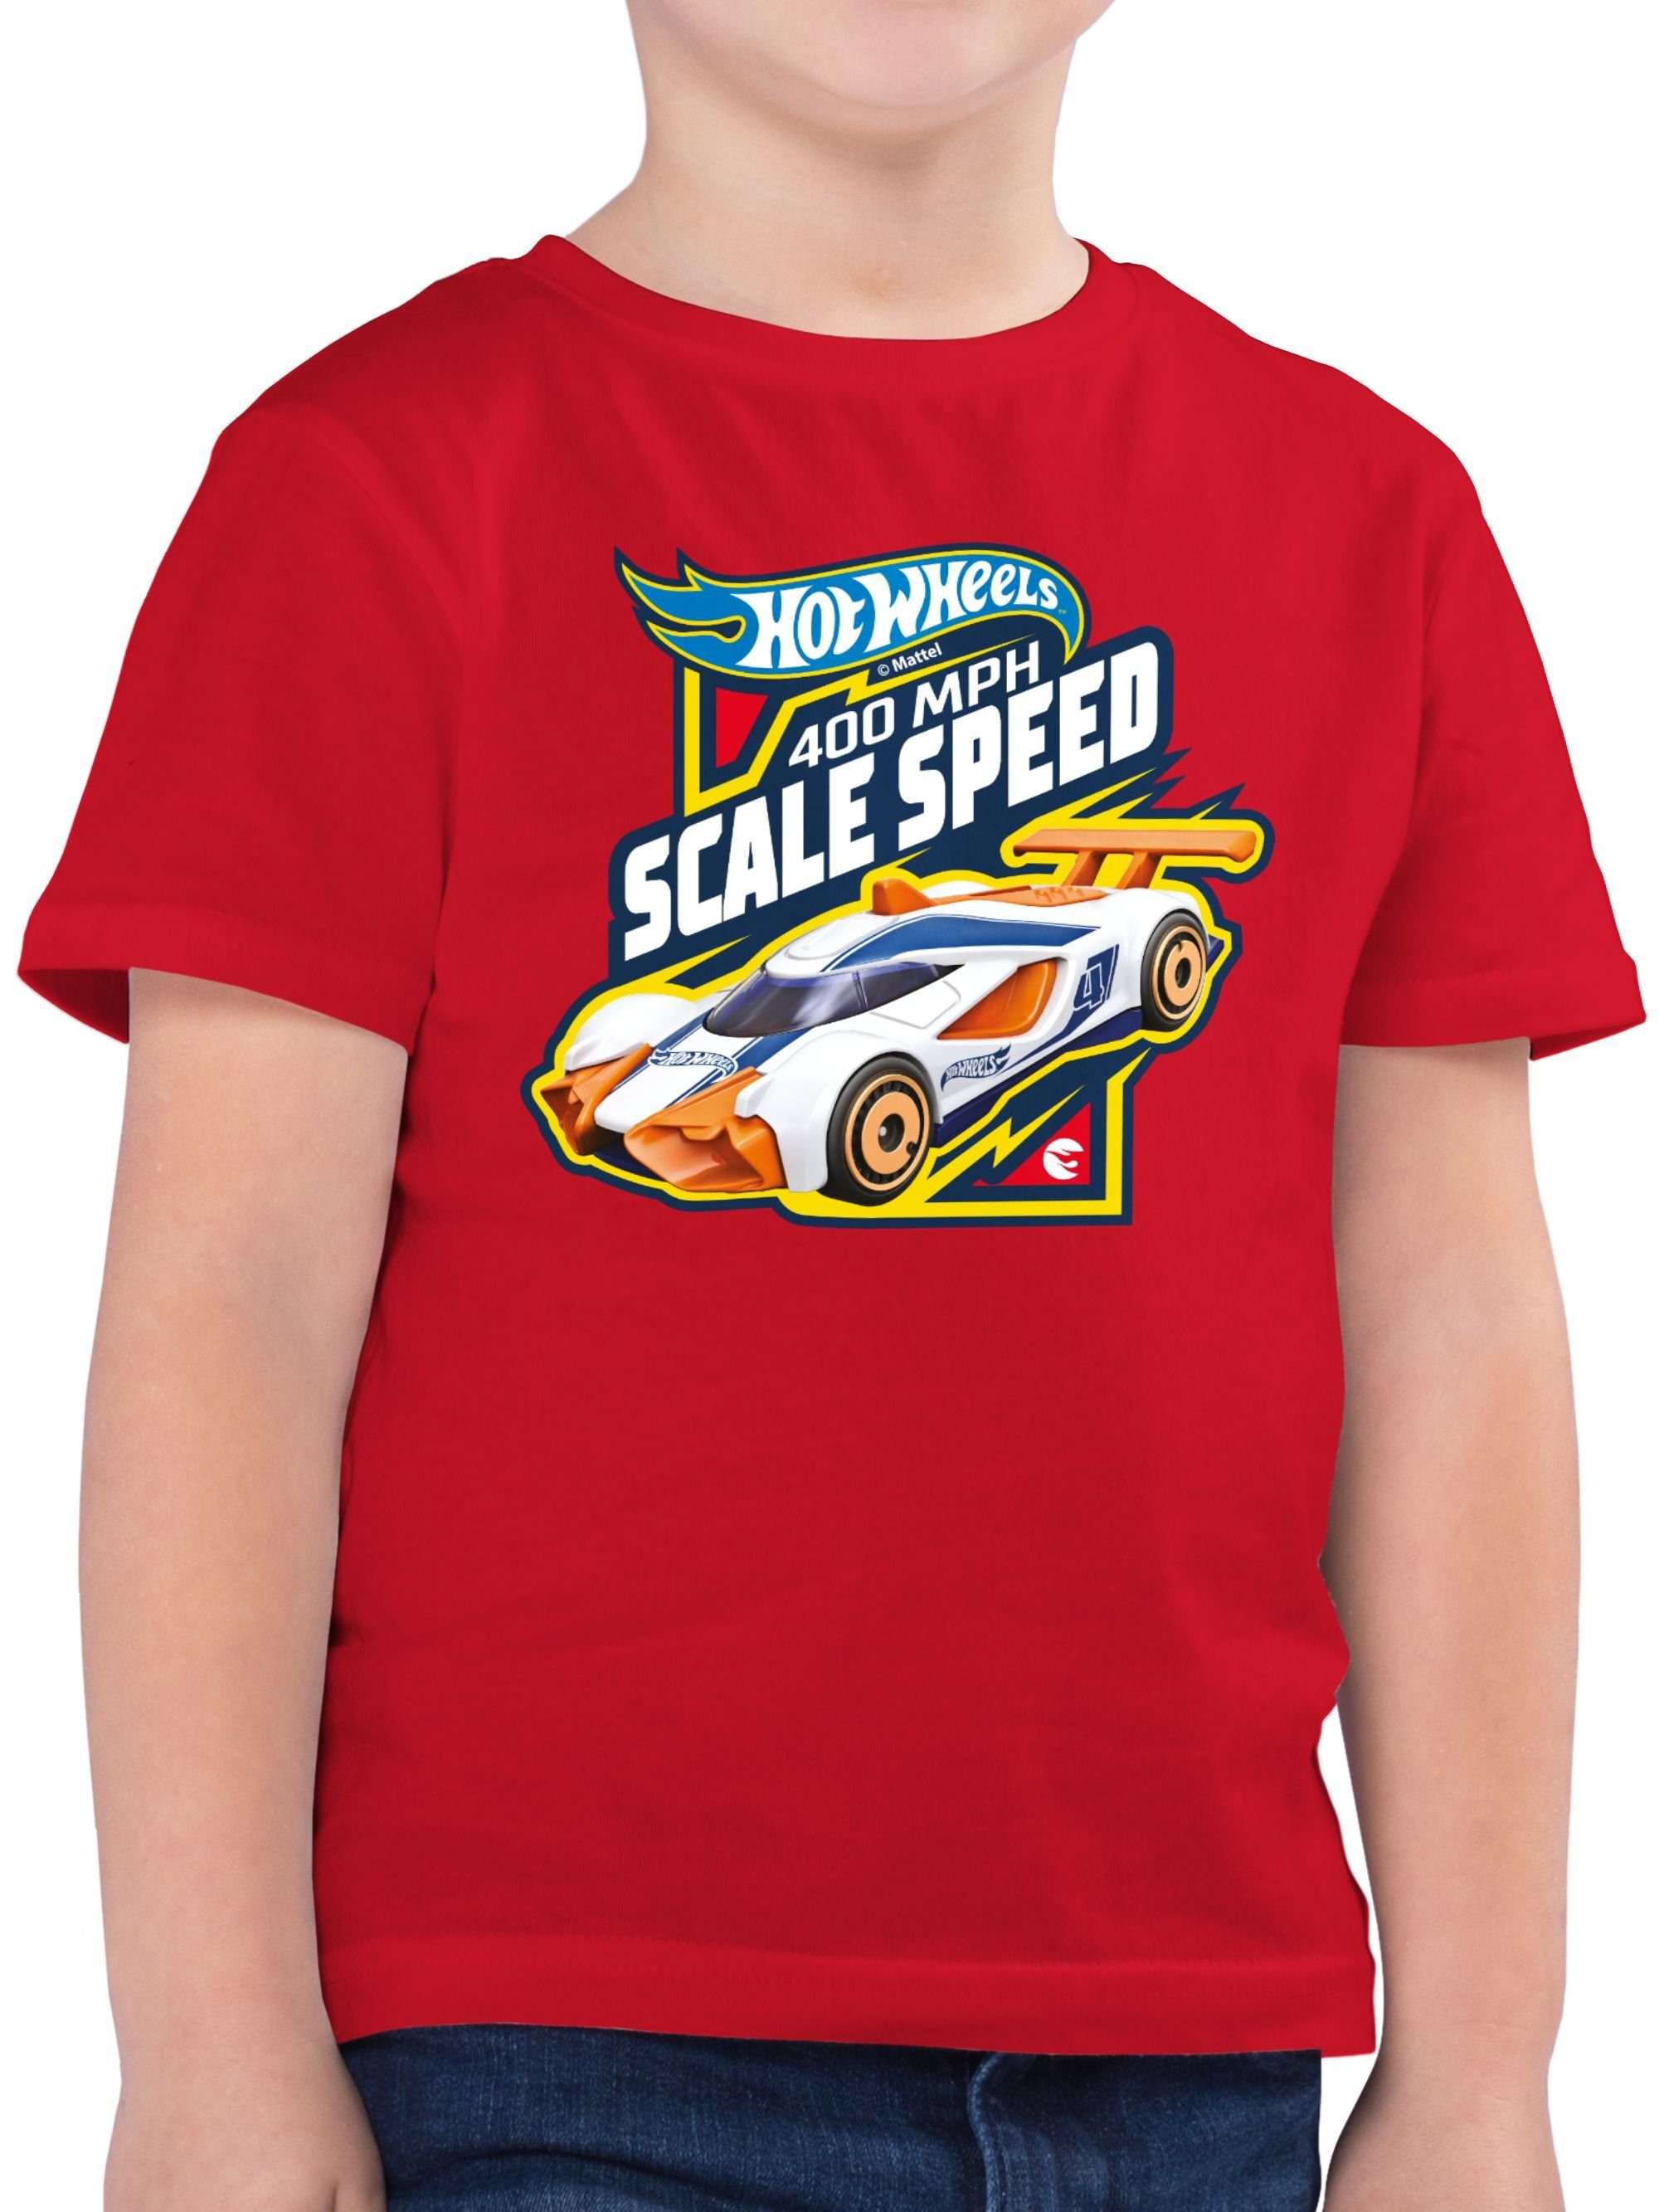 400MPH Scale 02 Rot Shirtracer Hot T-Shirt Wheels Speed Jungen